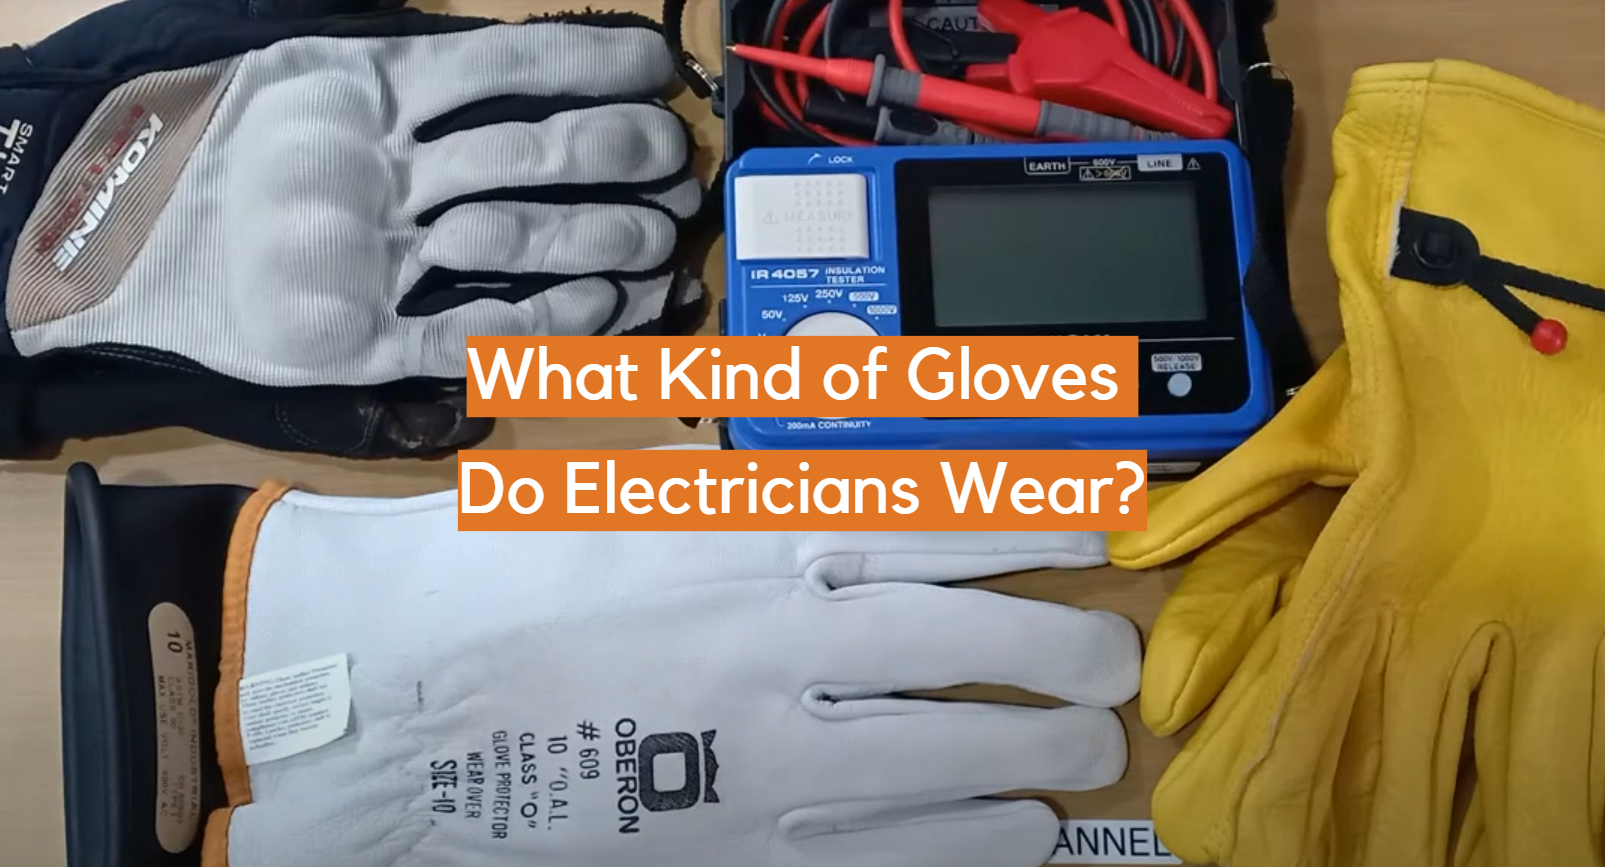 ¿Qué tipo de guantes usan los electricistas?